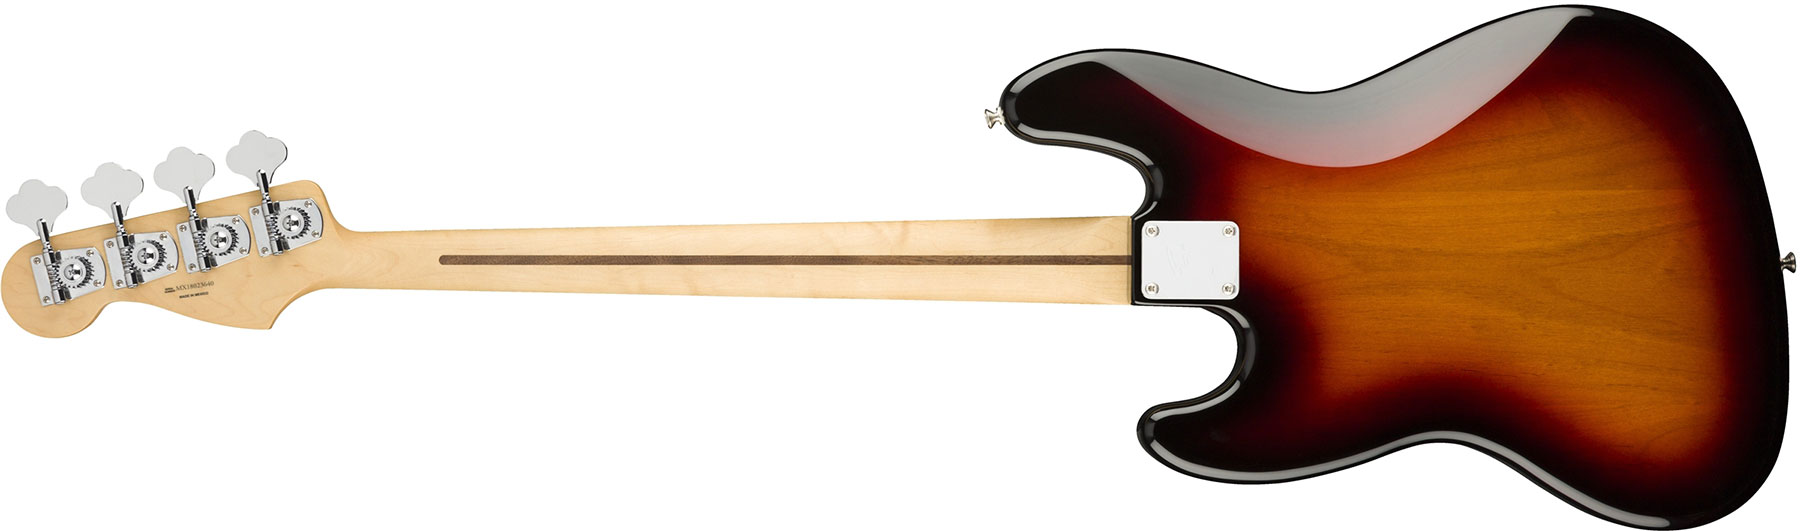 Fender Jazz Bass Player Mex Pf - 3-color Sunburst - Solid body elektrische bas - Variation 1